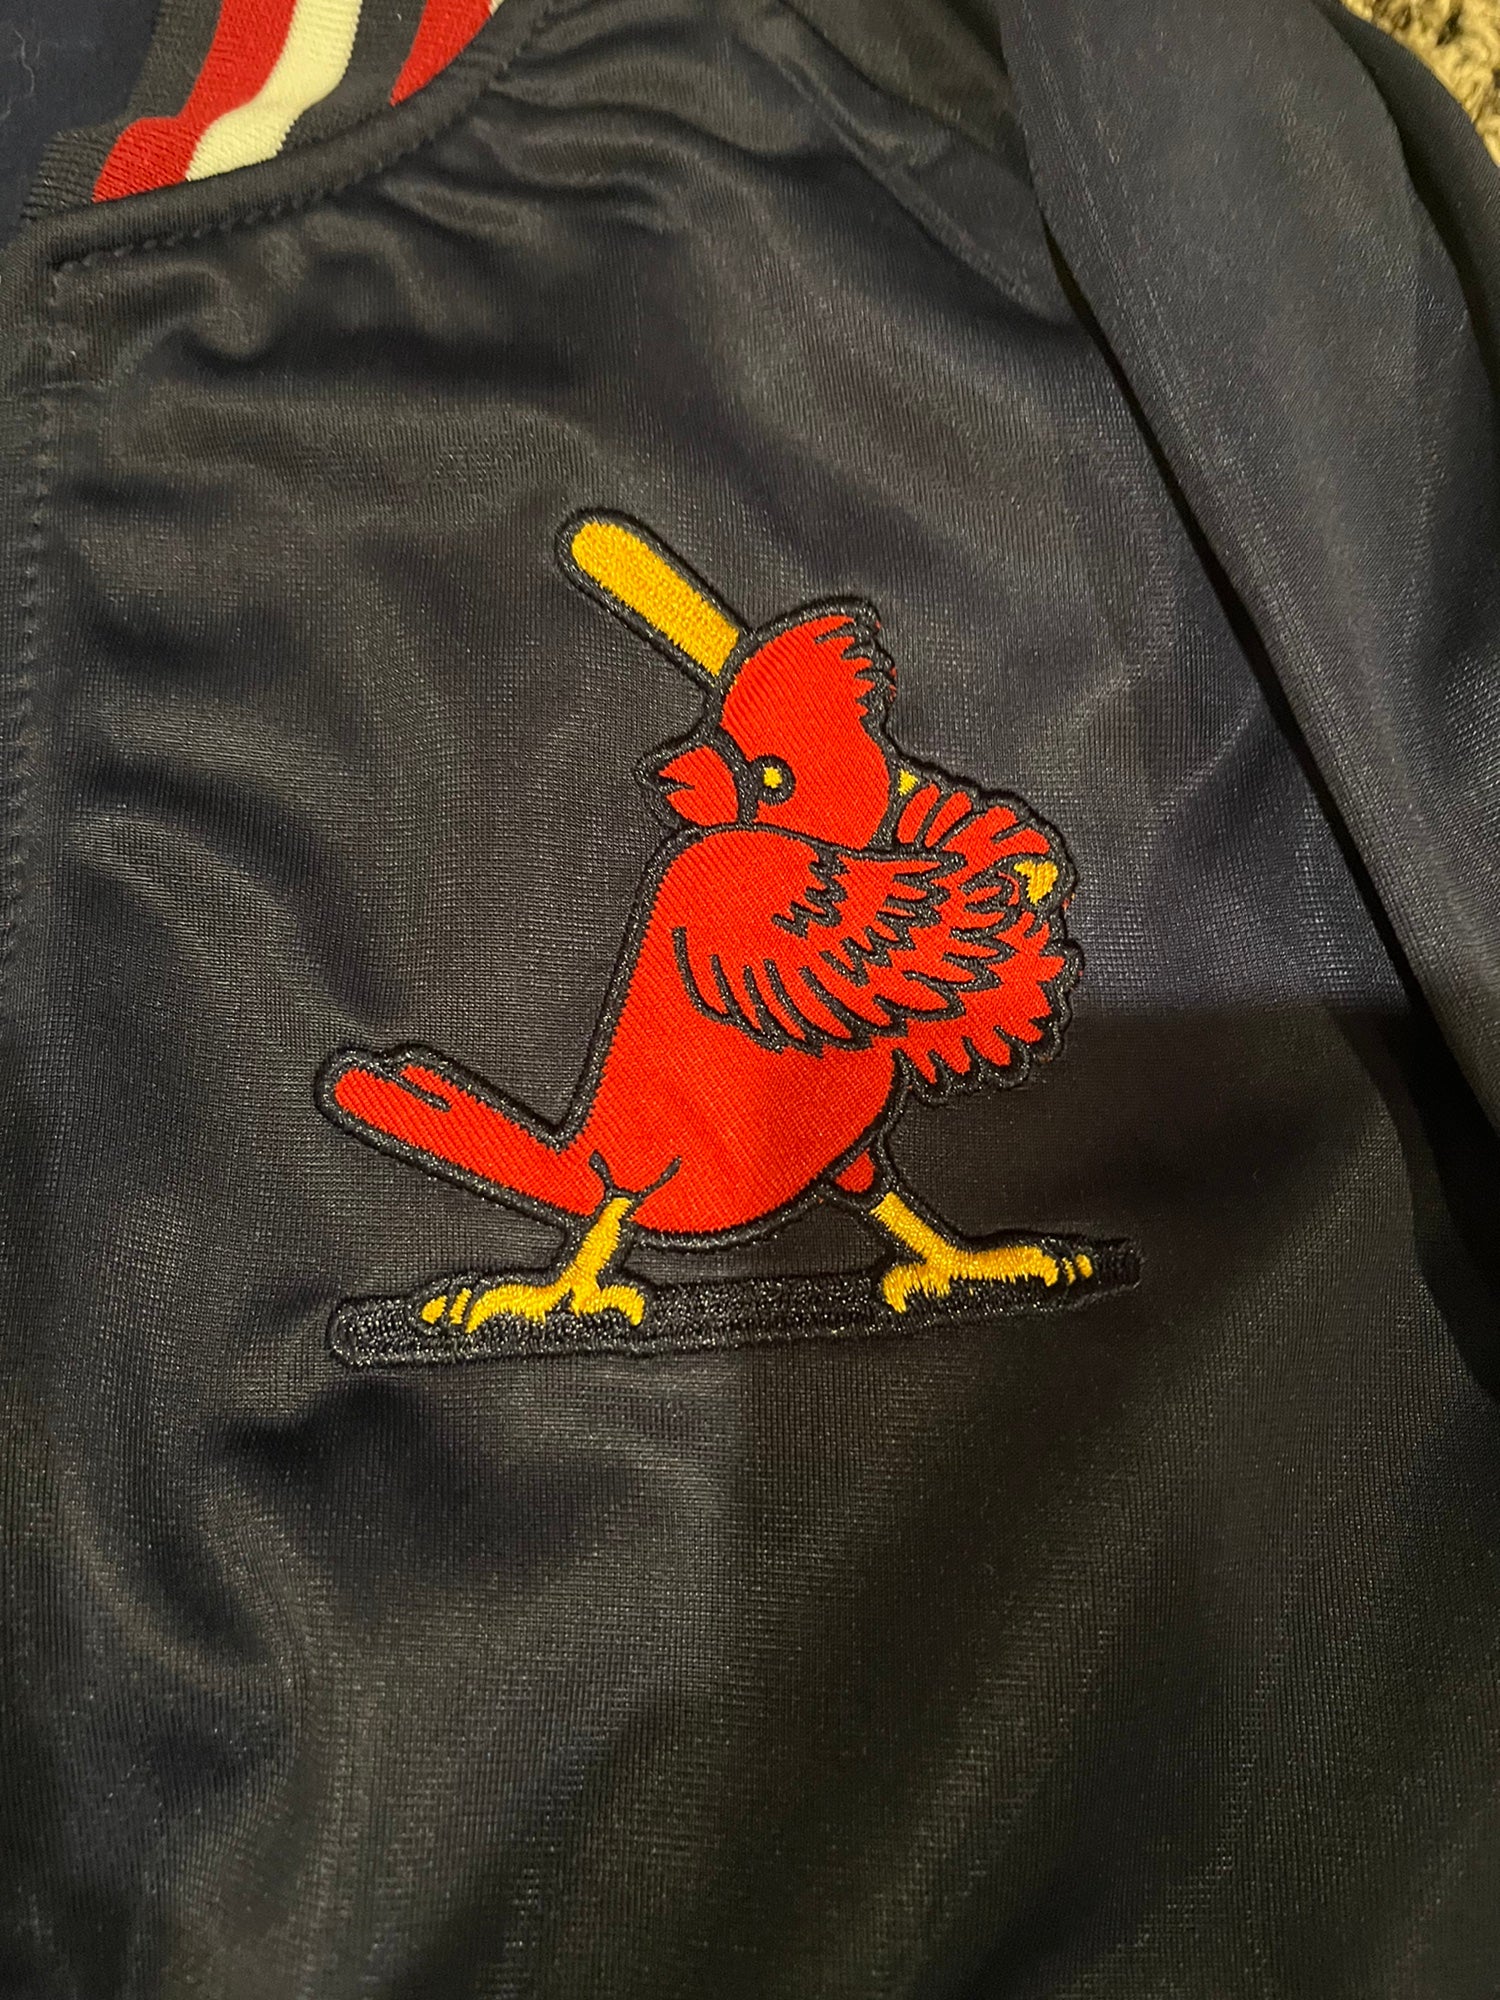 Mitchell & Ness Men's St. Louis Cardinals Short Sleeve Hoodie